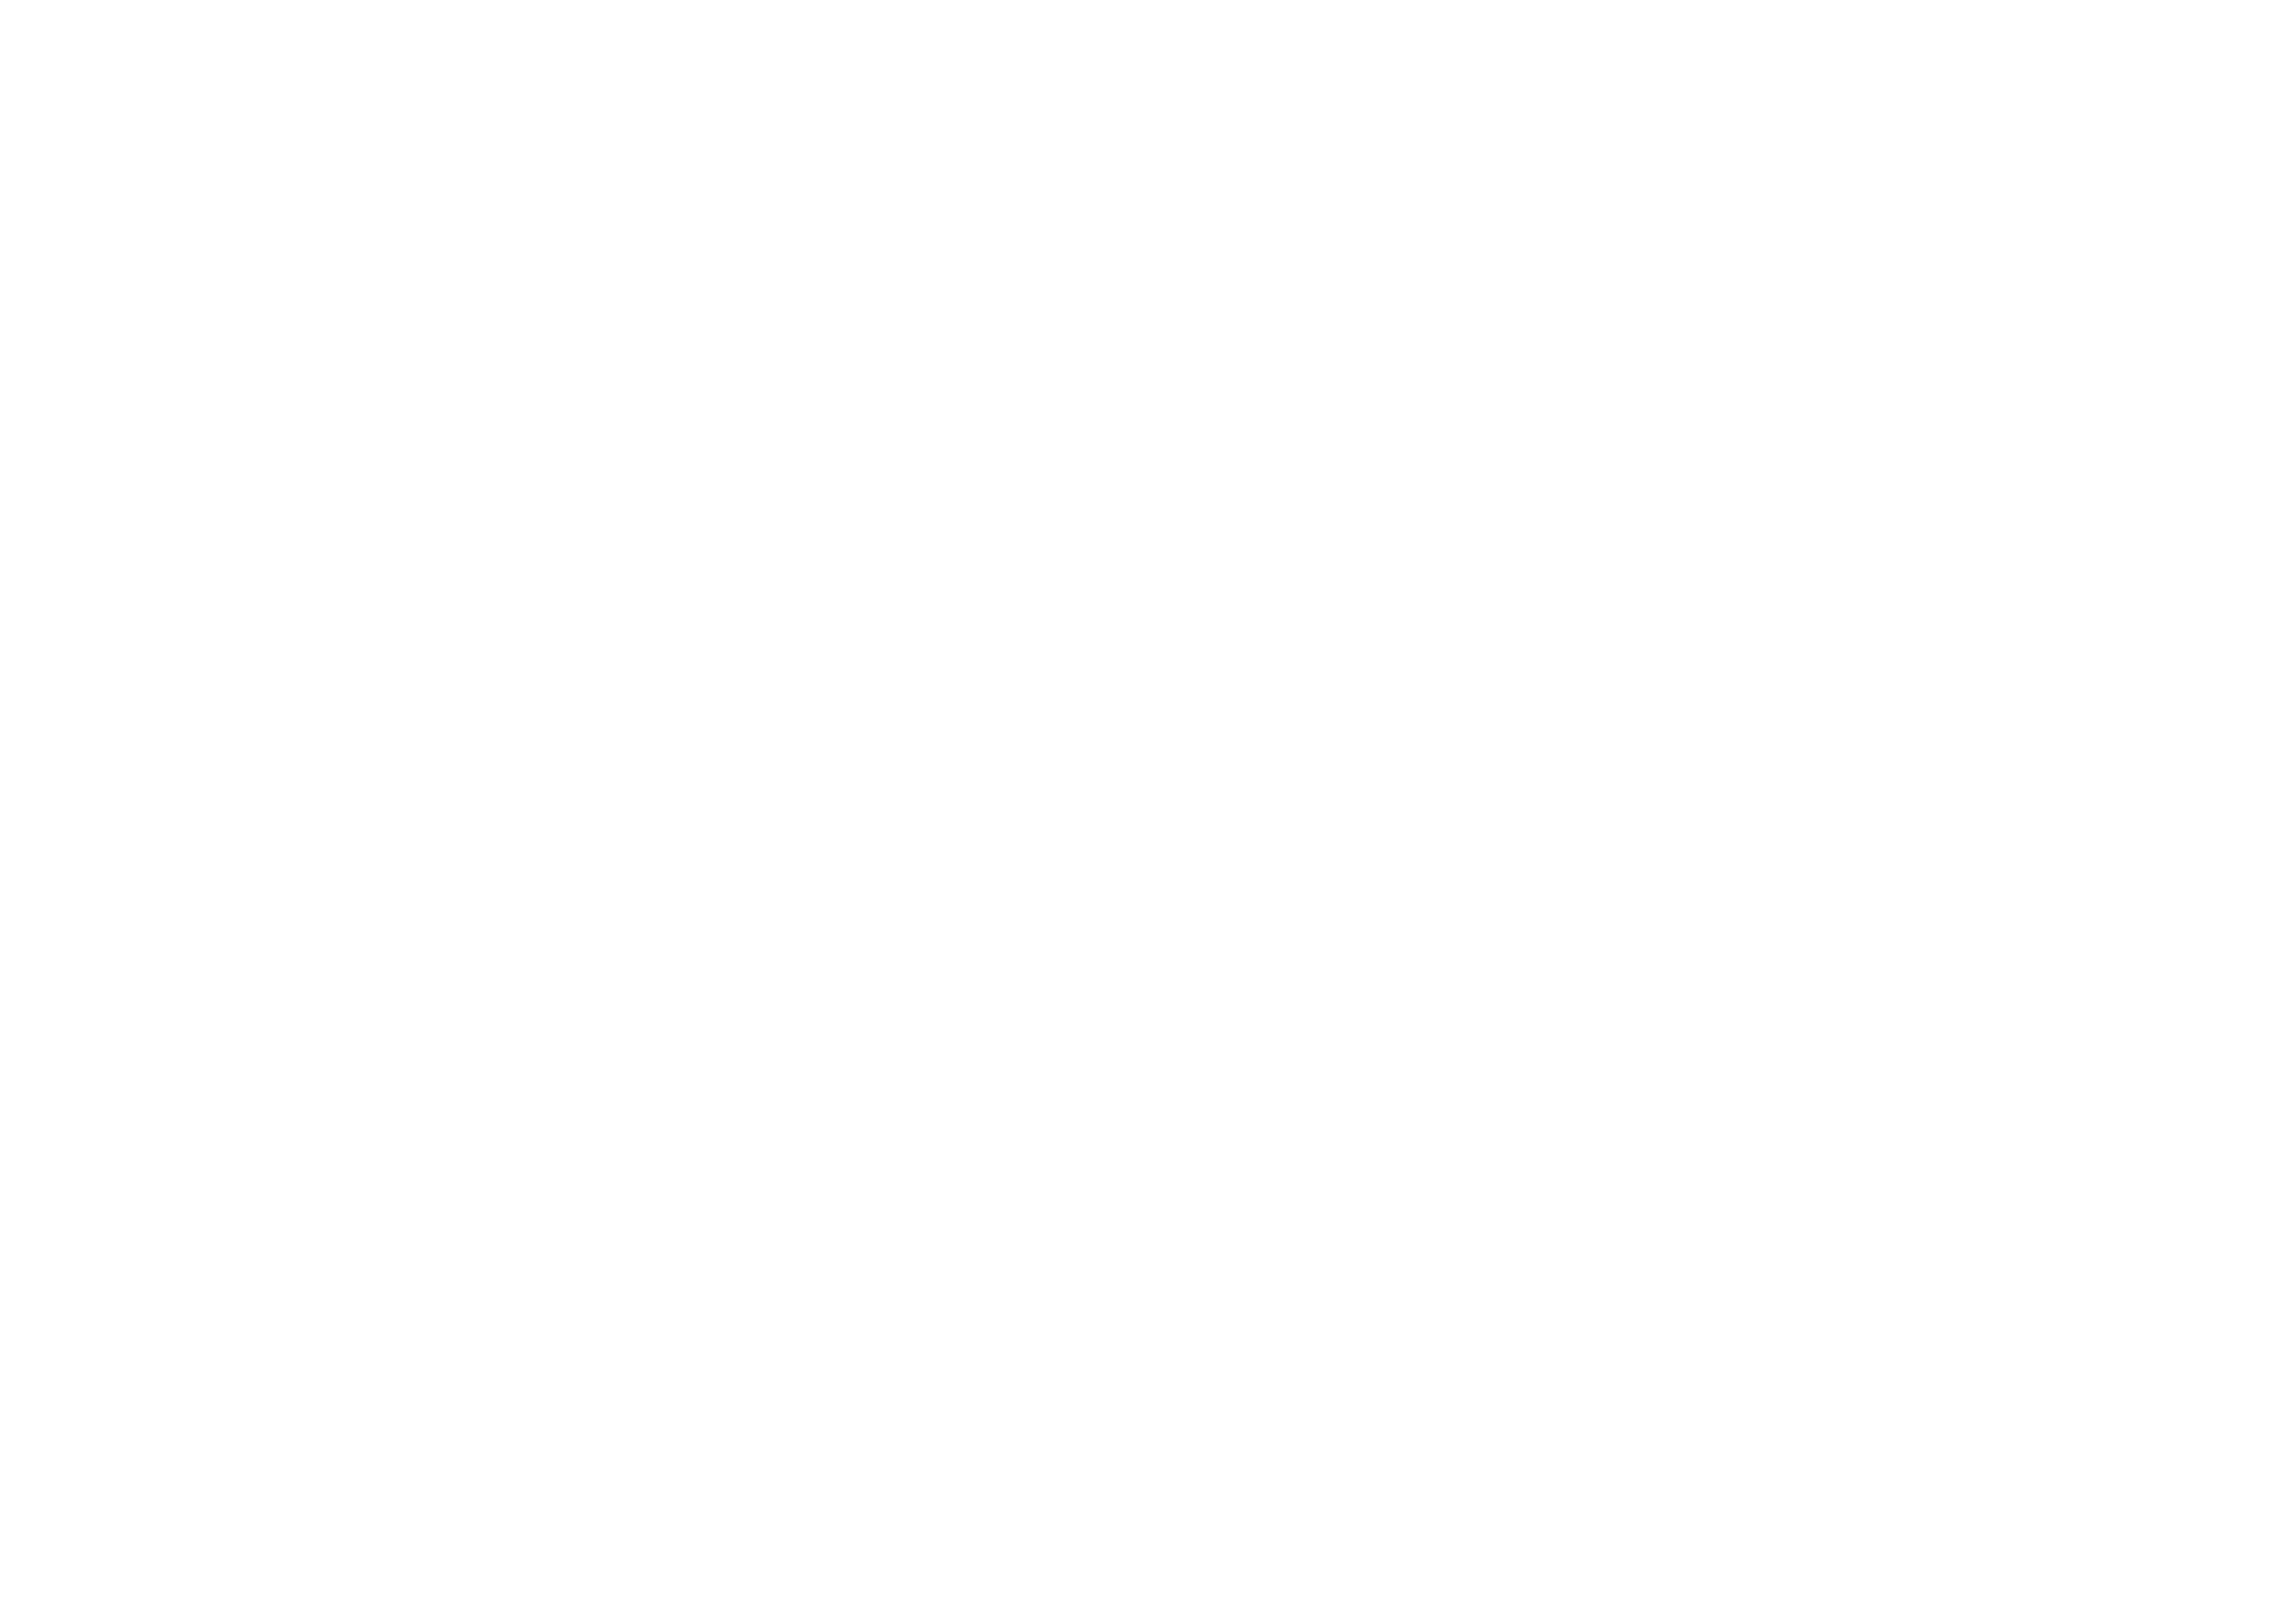 Home design France : Le specialiste en eclairage et mobilier design